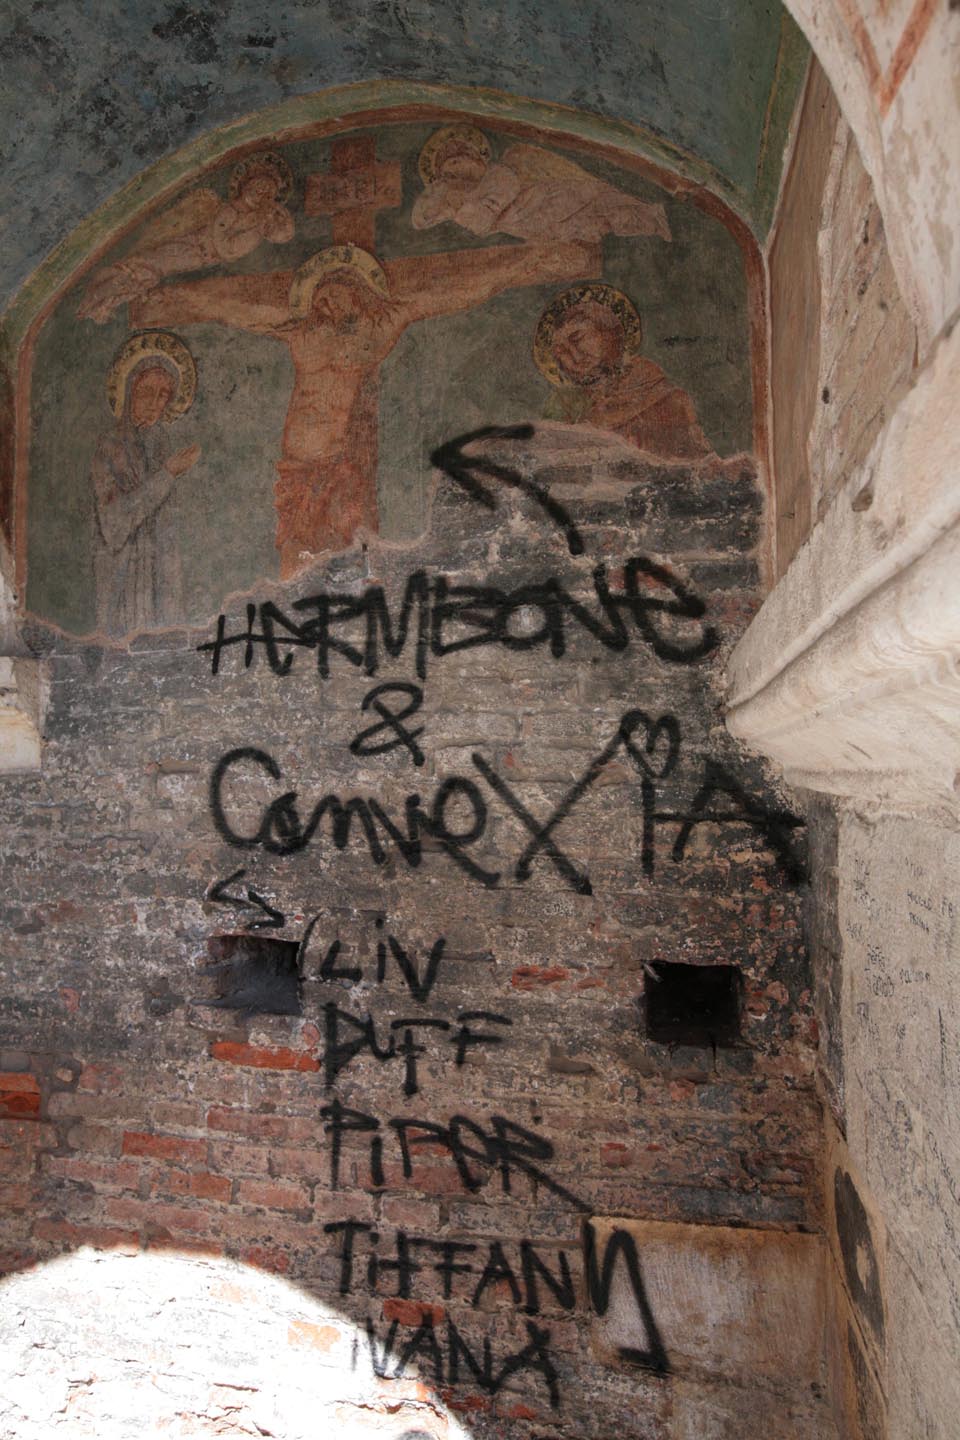 Un fresco anónimo, perteneciente a la llamada Escuela de Giotto, que data de cerca del 1320, ubicado en el claustro del Templo de San Lorenzo en Vicenza, fue dañado la noche del pasado 10 de agosto por un desconocido que hizo un graffiti sobre la pieza